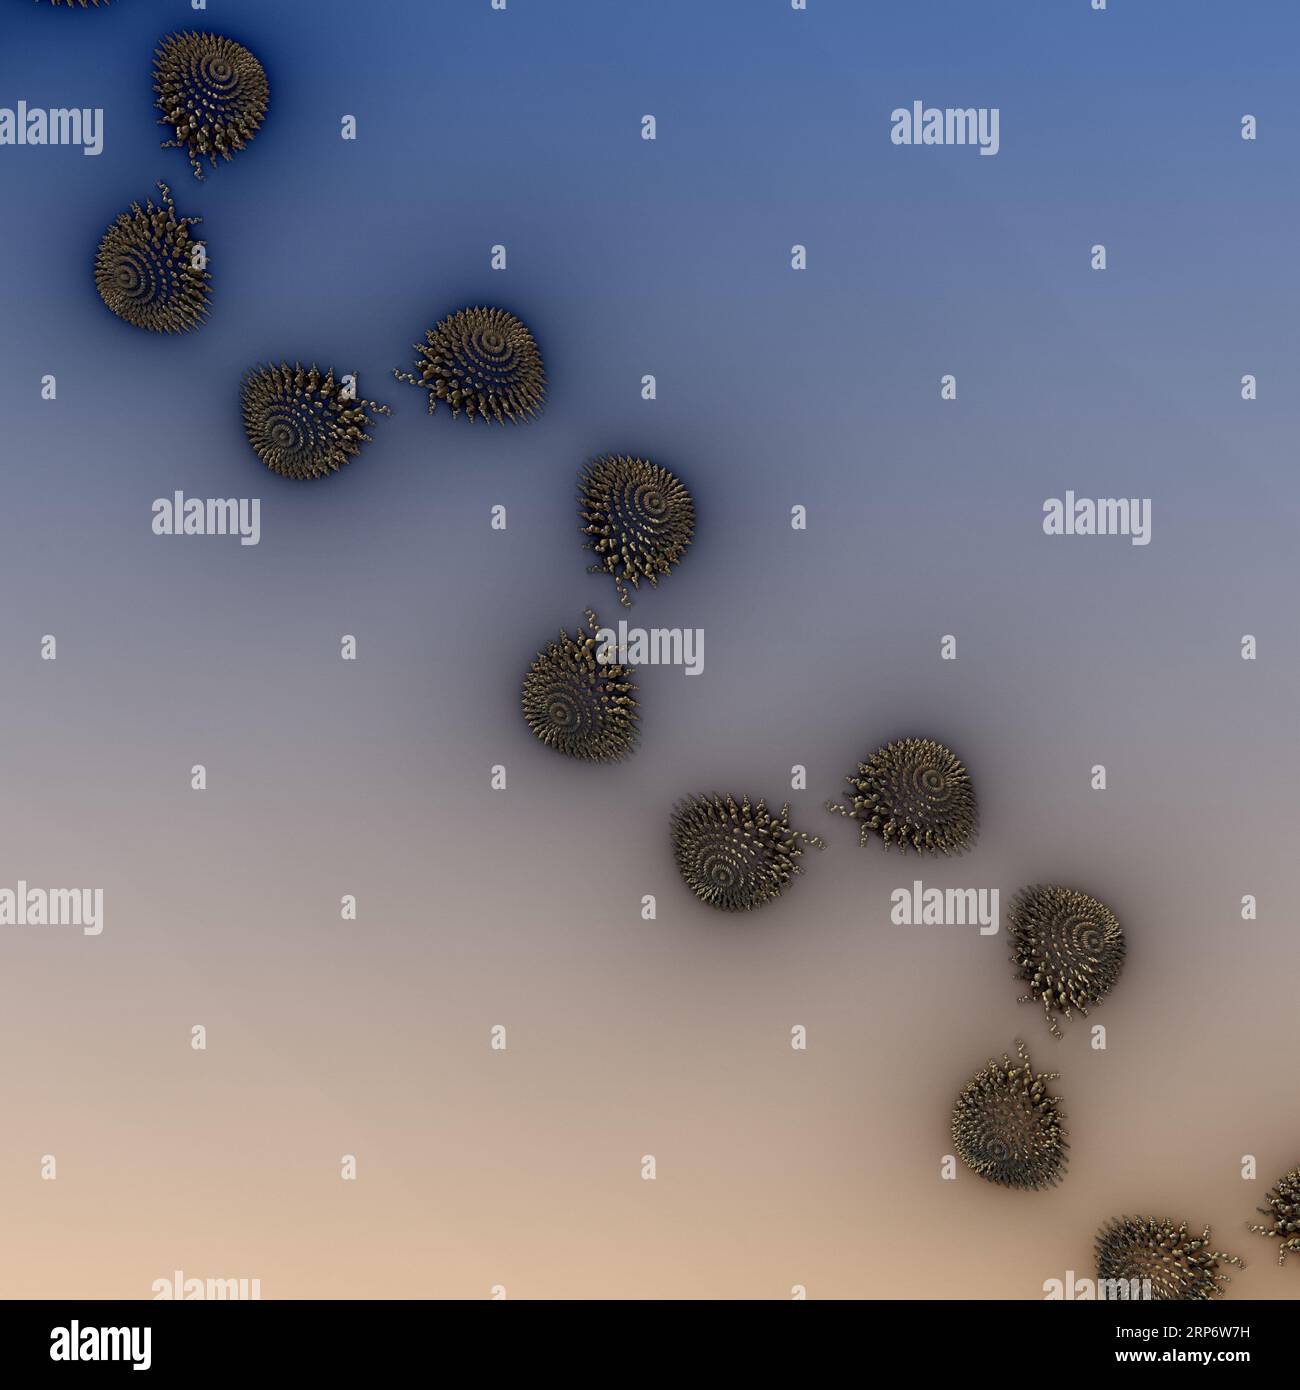 Oggetti frattali metallici astratti su sfondo blu e marrone. illustrazione 3d, rendering 3d. Foto Stock